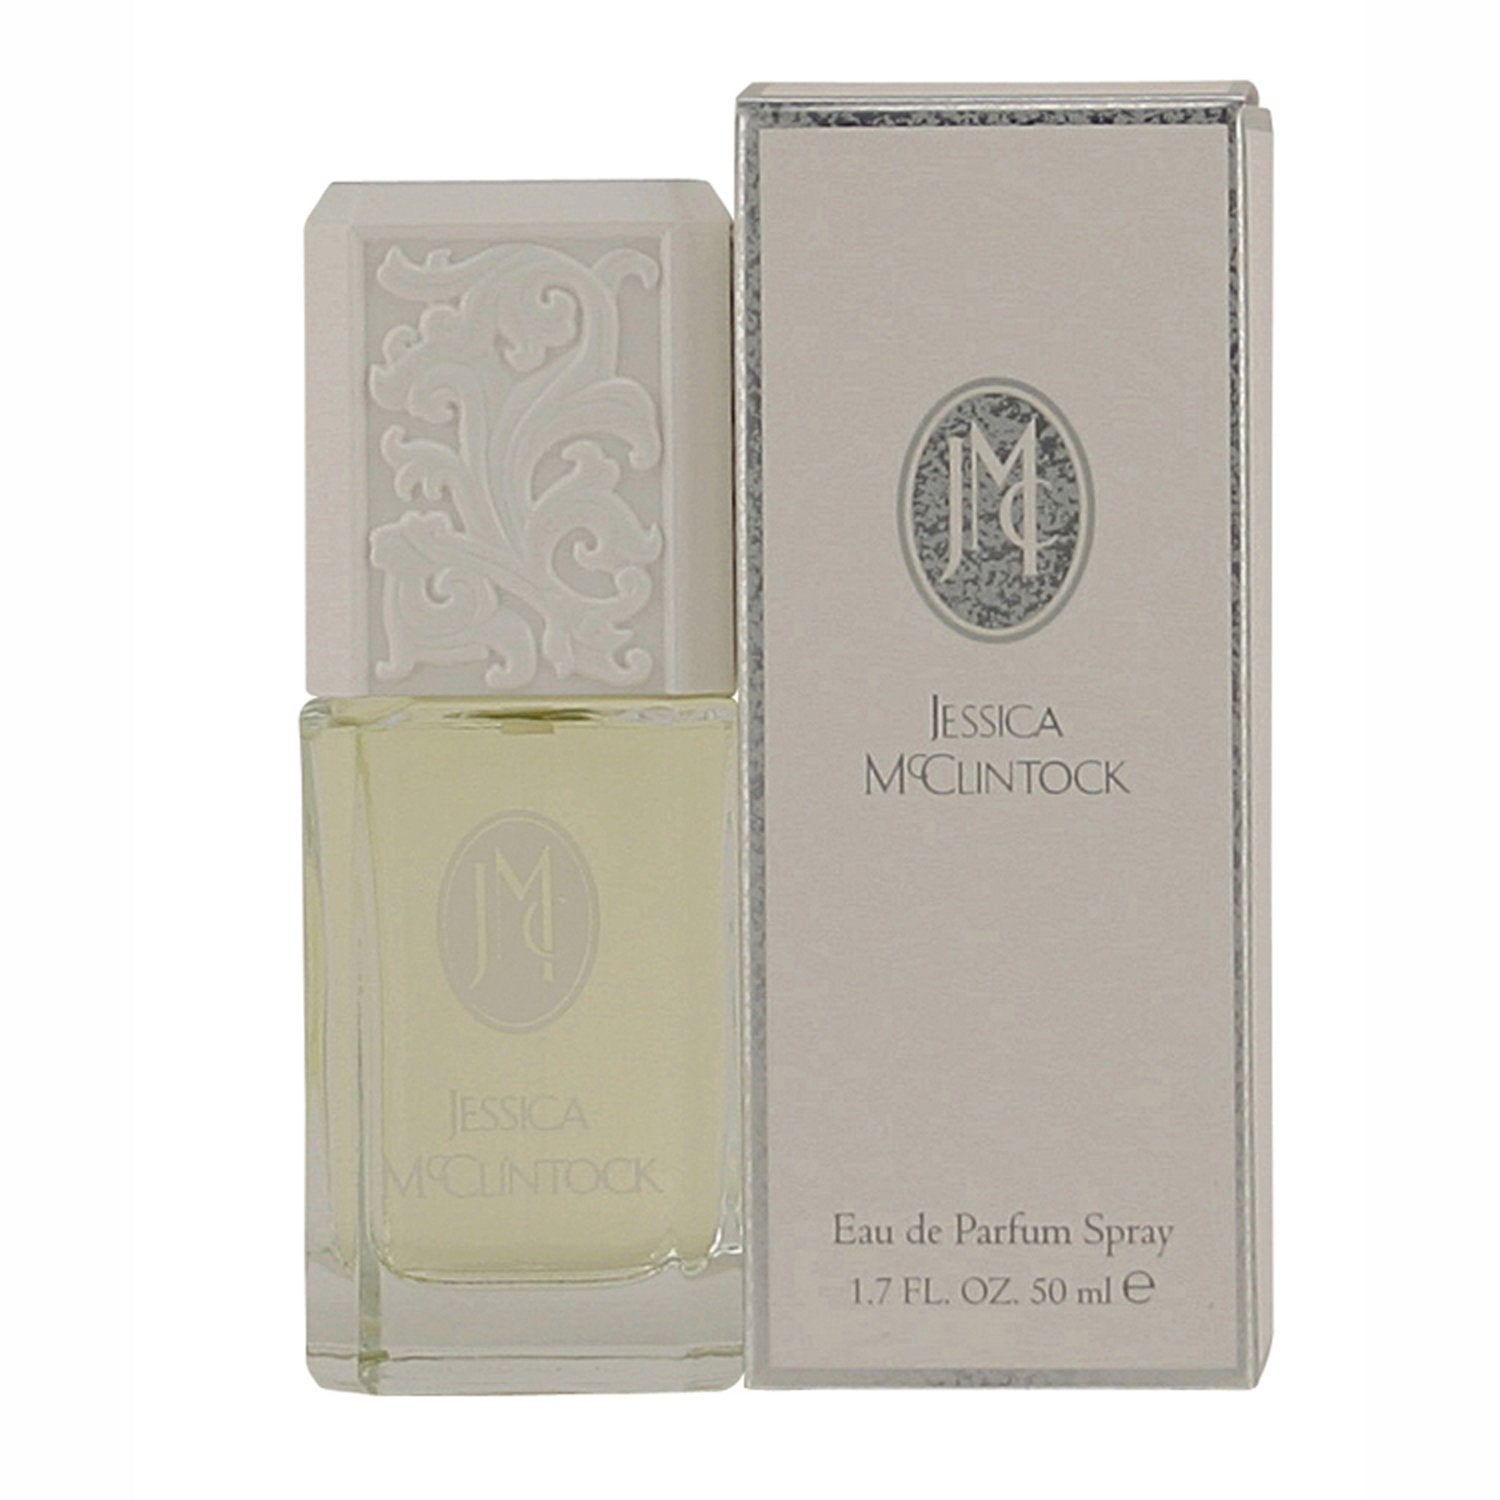 Perfume - JESSICA MCCLINTOCK FOR WOMEN - EAU DE PARFUM SPRAY